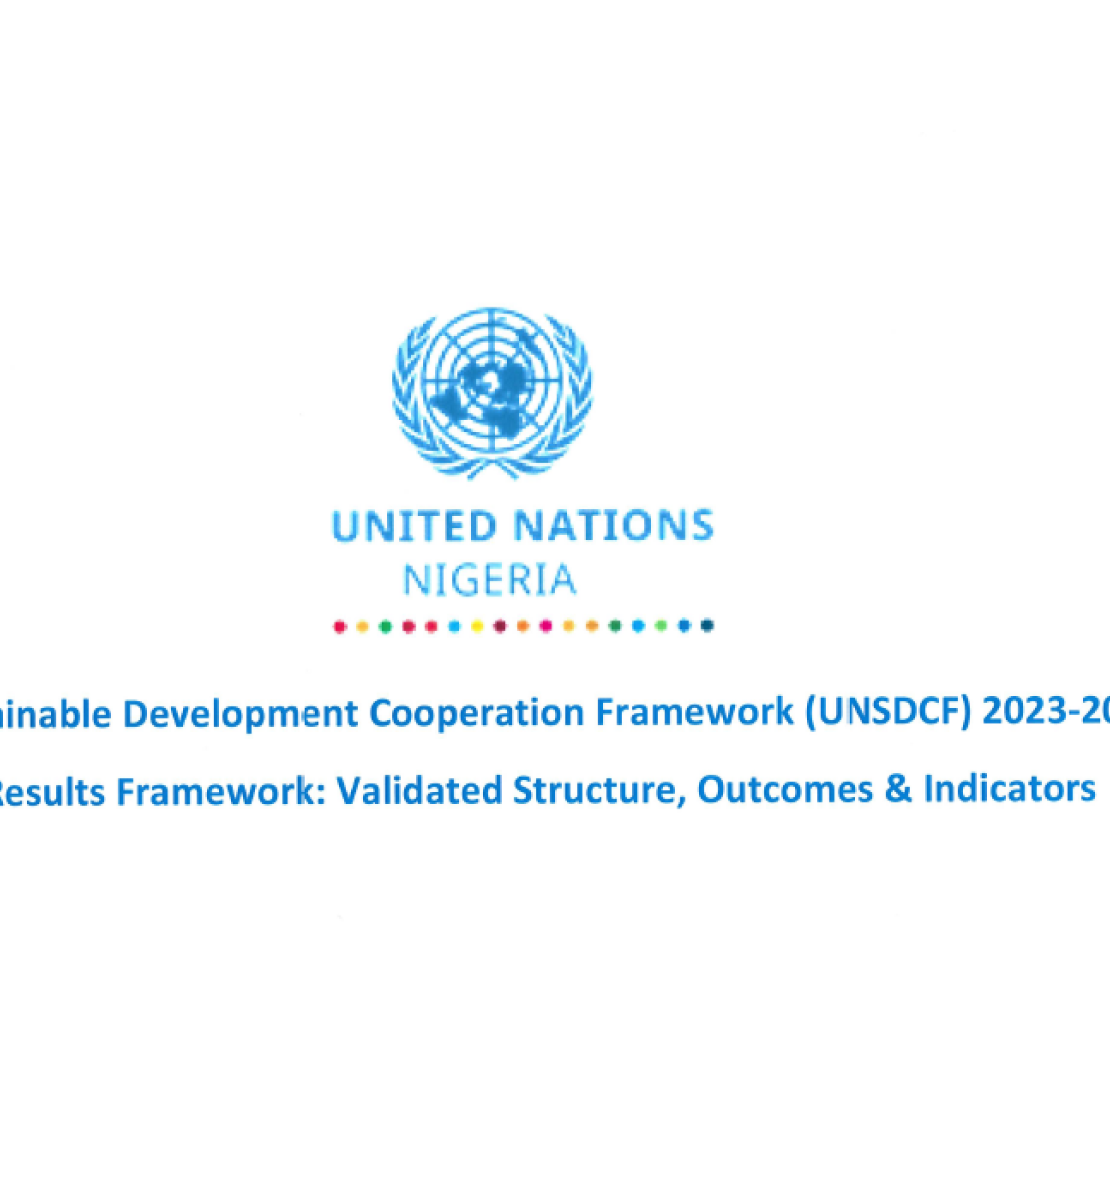 Documento en fondo blanco con texto y logo de la ONU en Nigeria en azul.